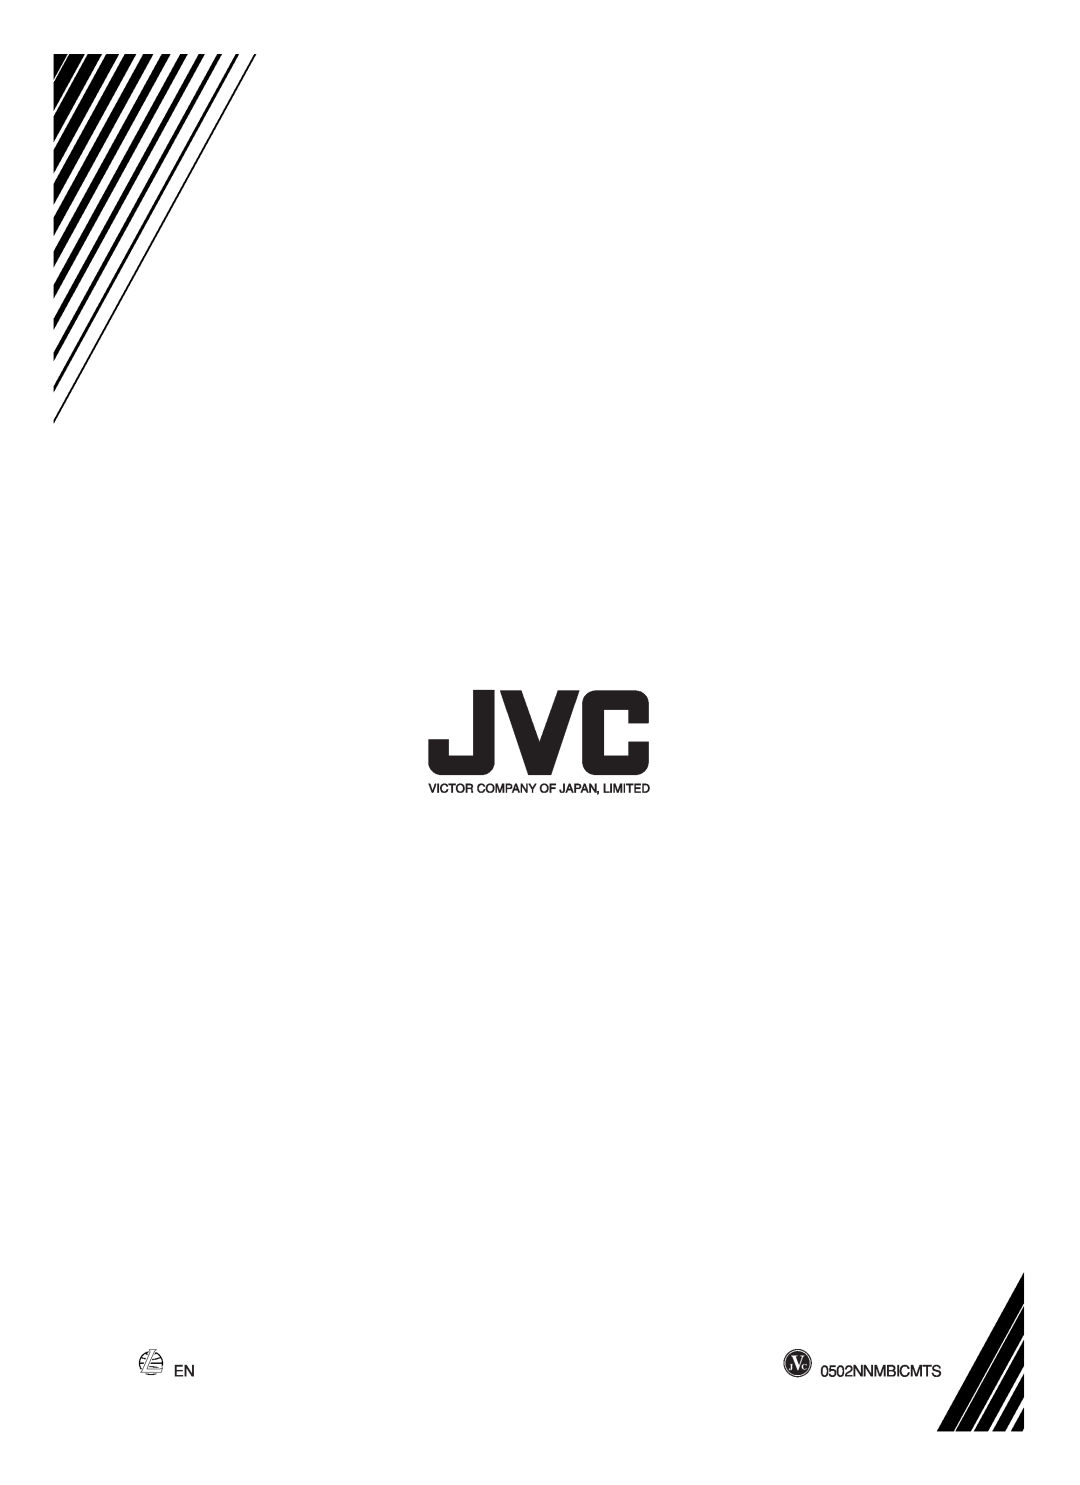 JVC RC-BM5 manual 0502NNMBICMTS 